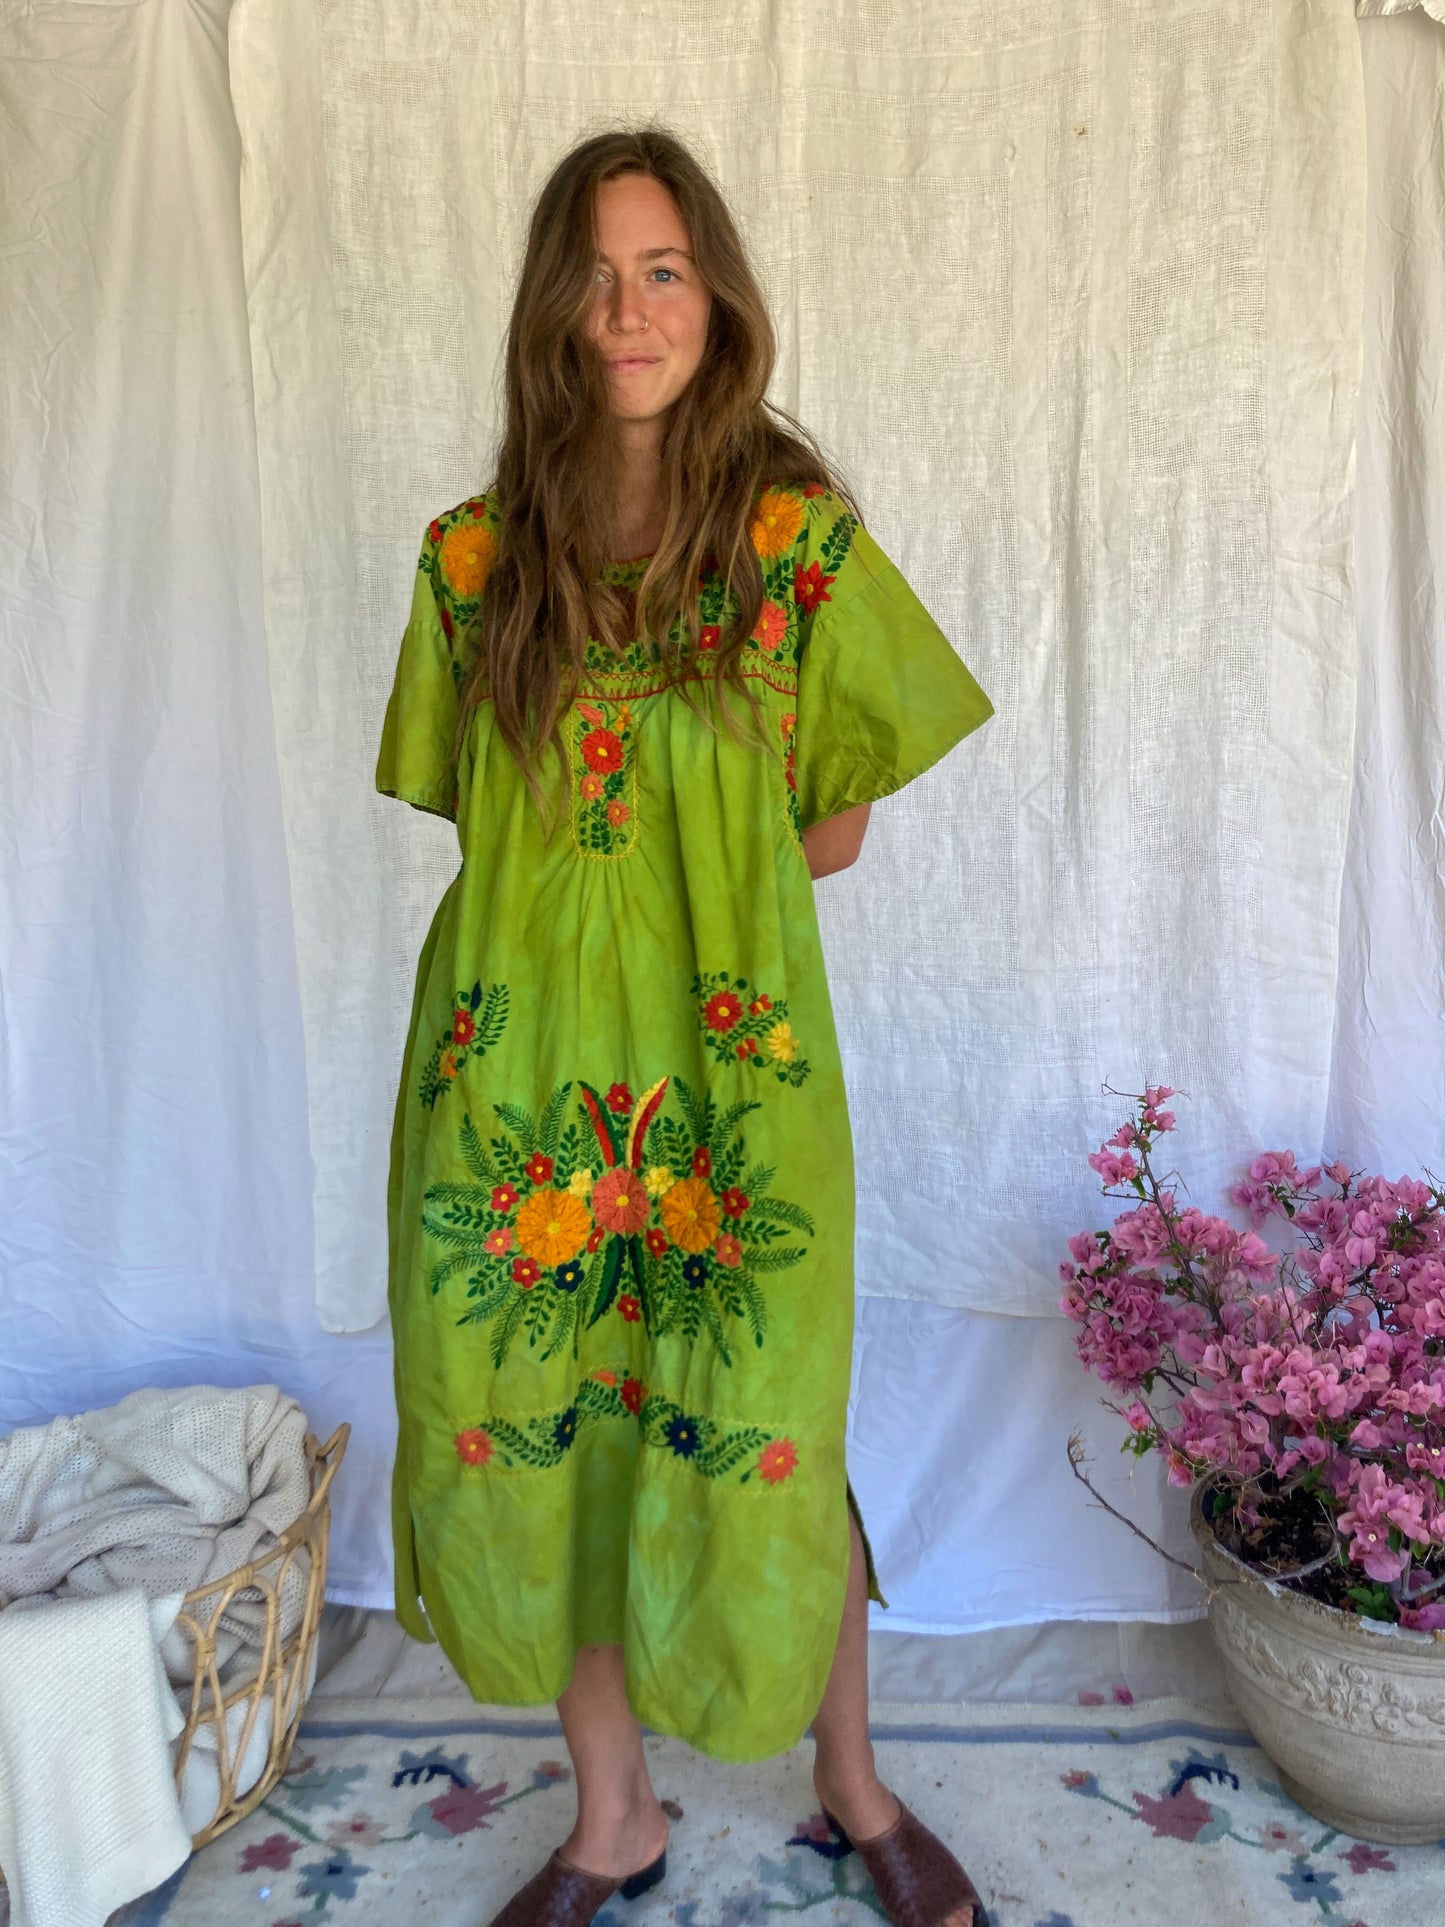 Marigold Traditional Huipil Dress